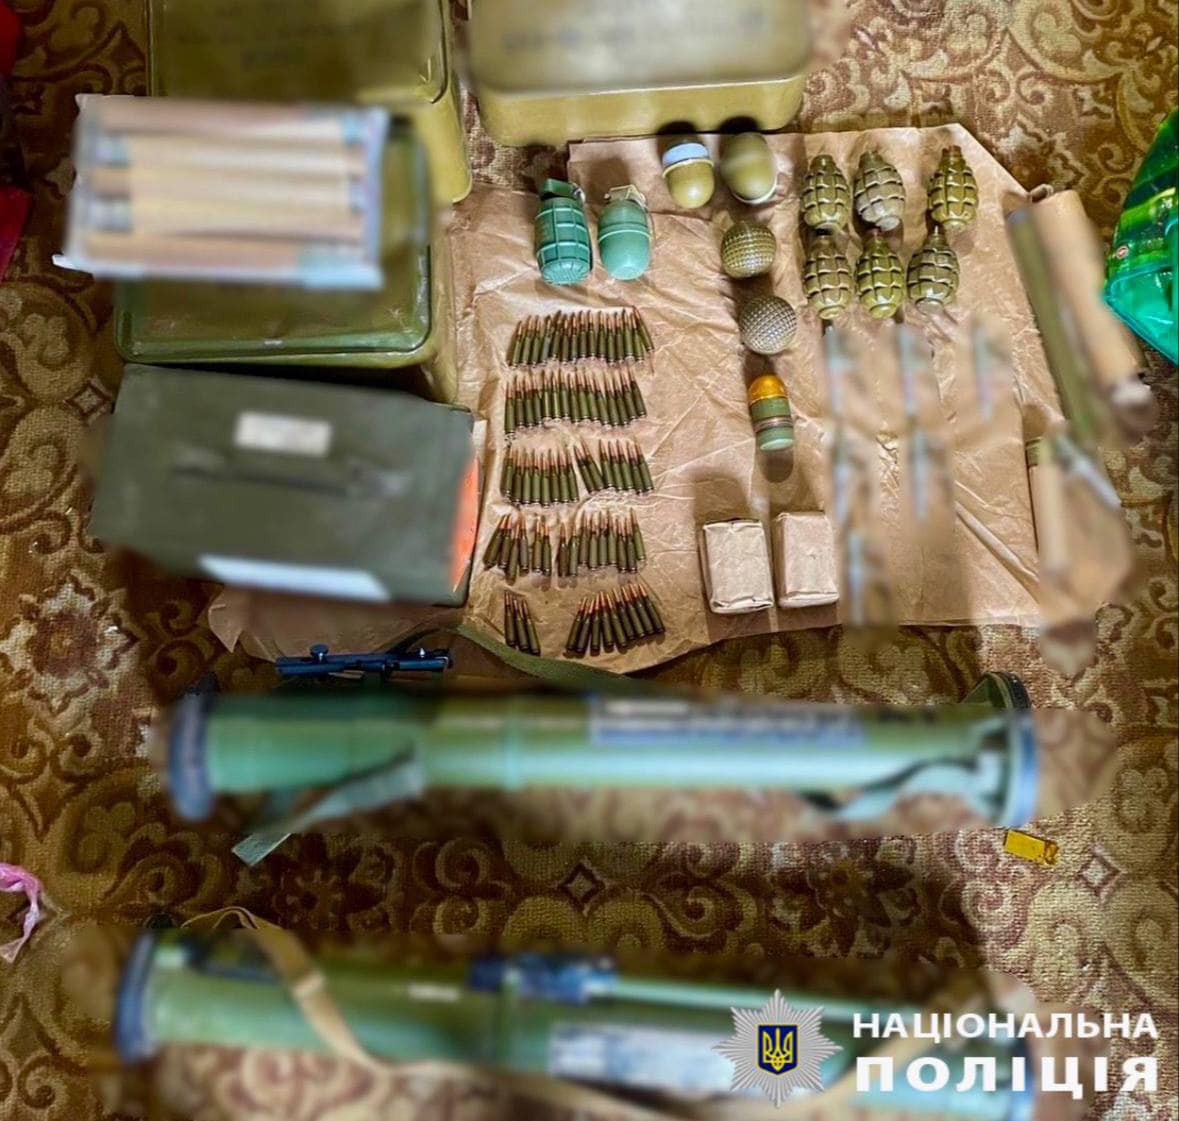 Поліцейські вилучили боєприпаси у мешканця Київської області